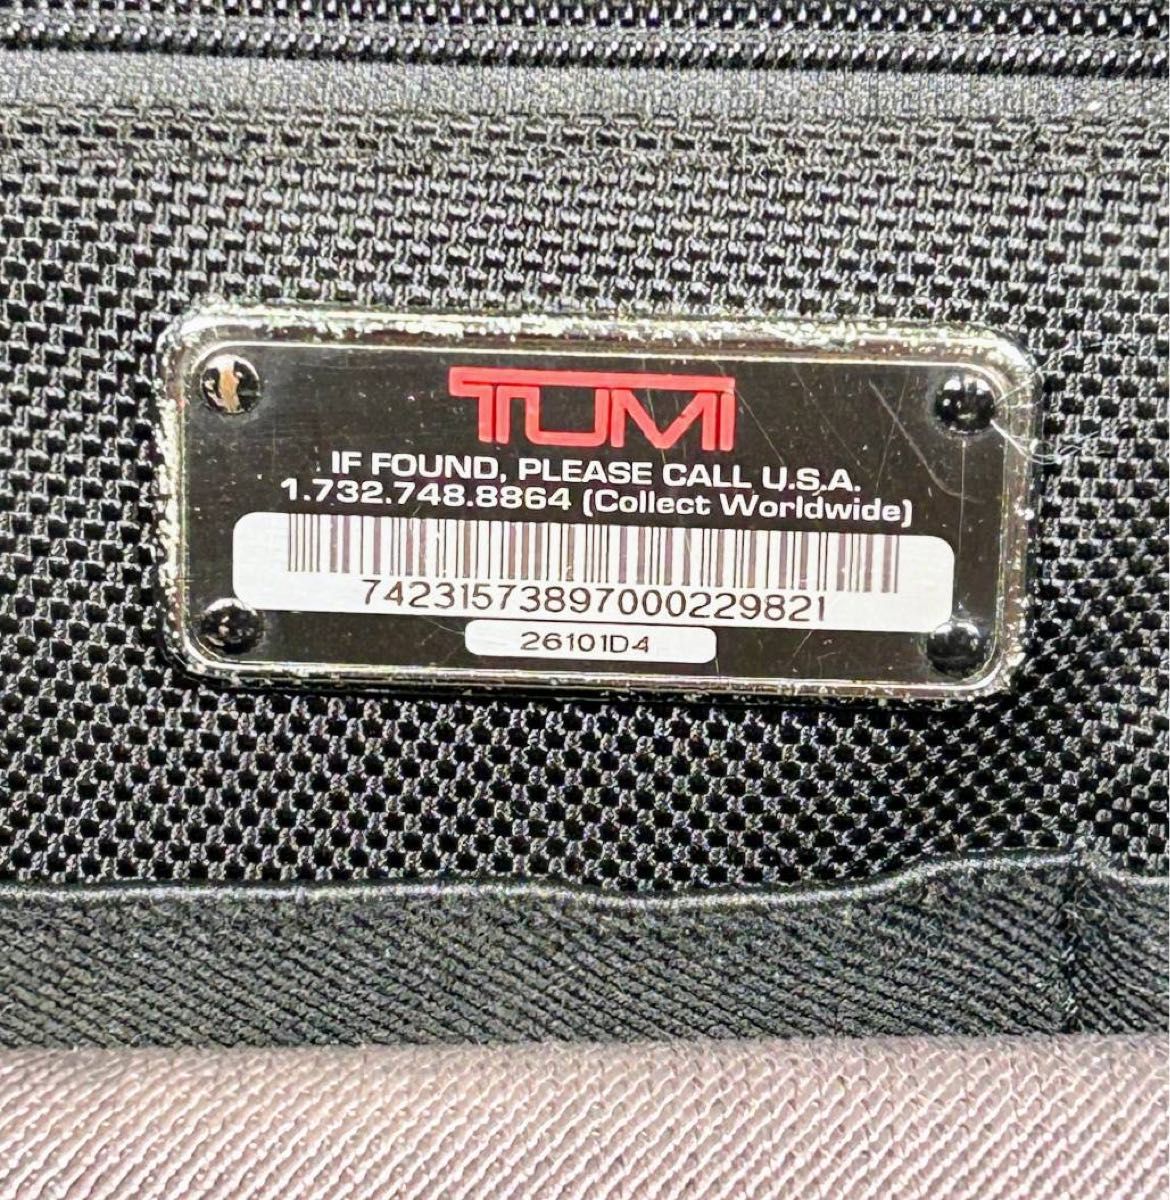 TUMI トゥミ ビジネスバッグ ブリーフケース 2WAY ブラック 黒